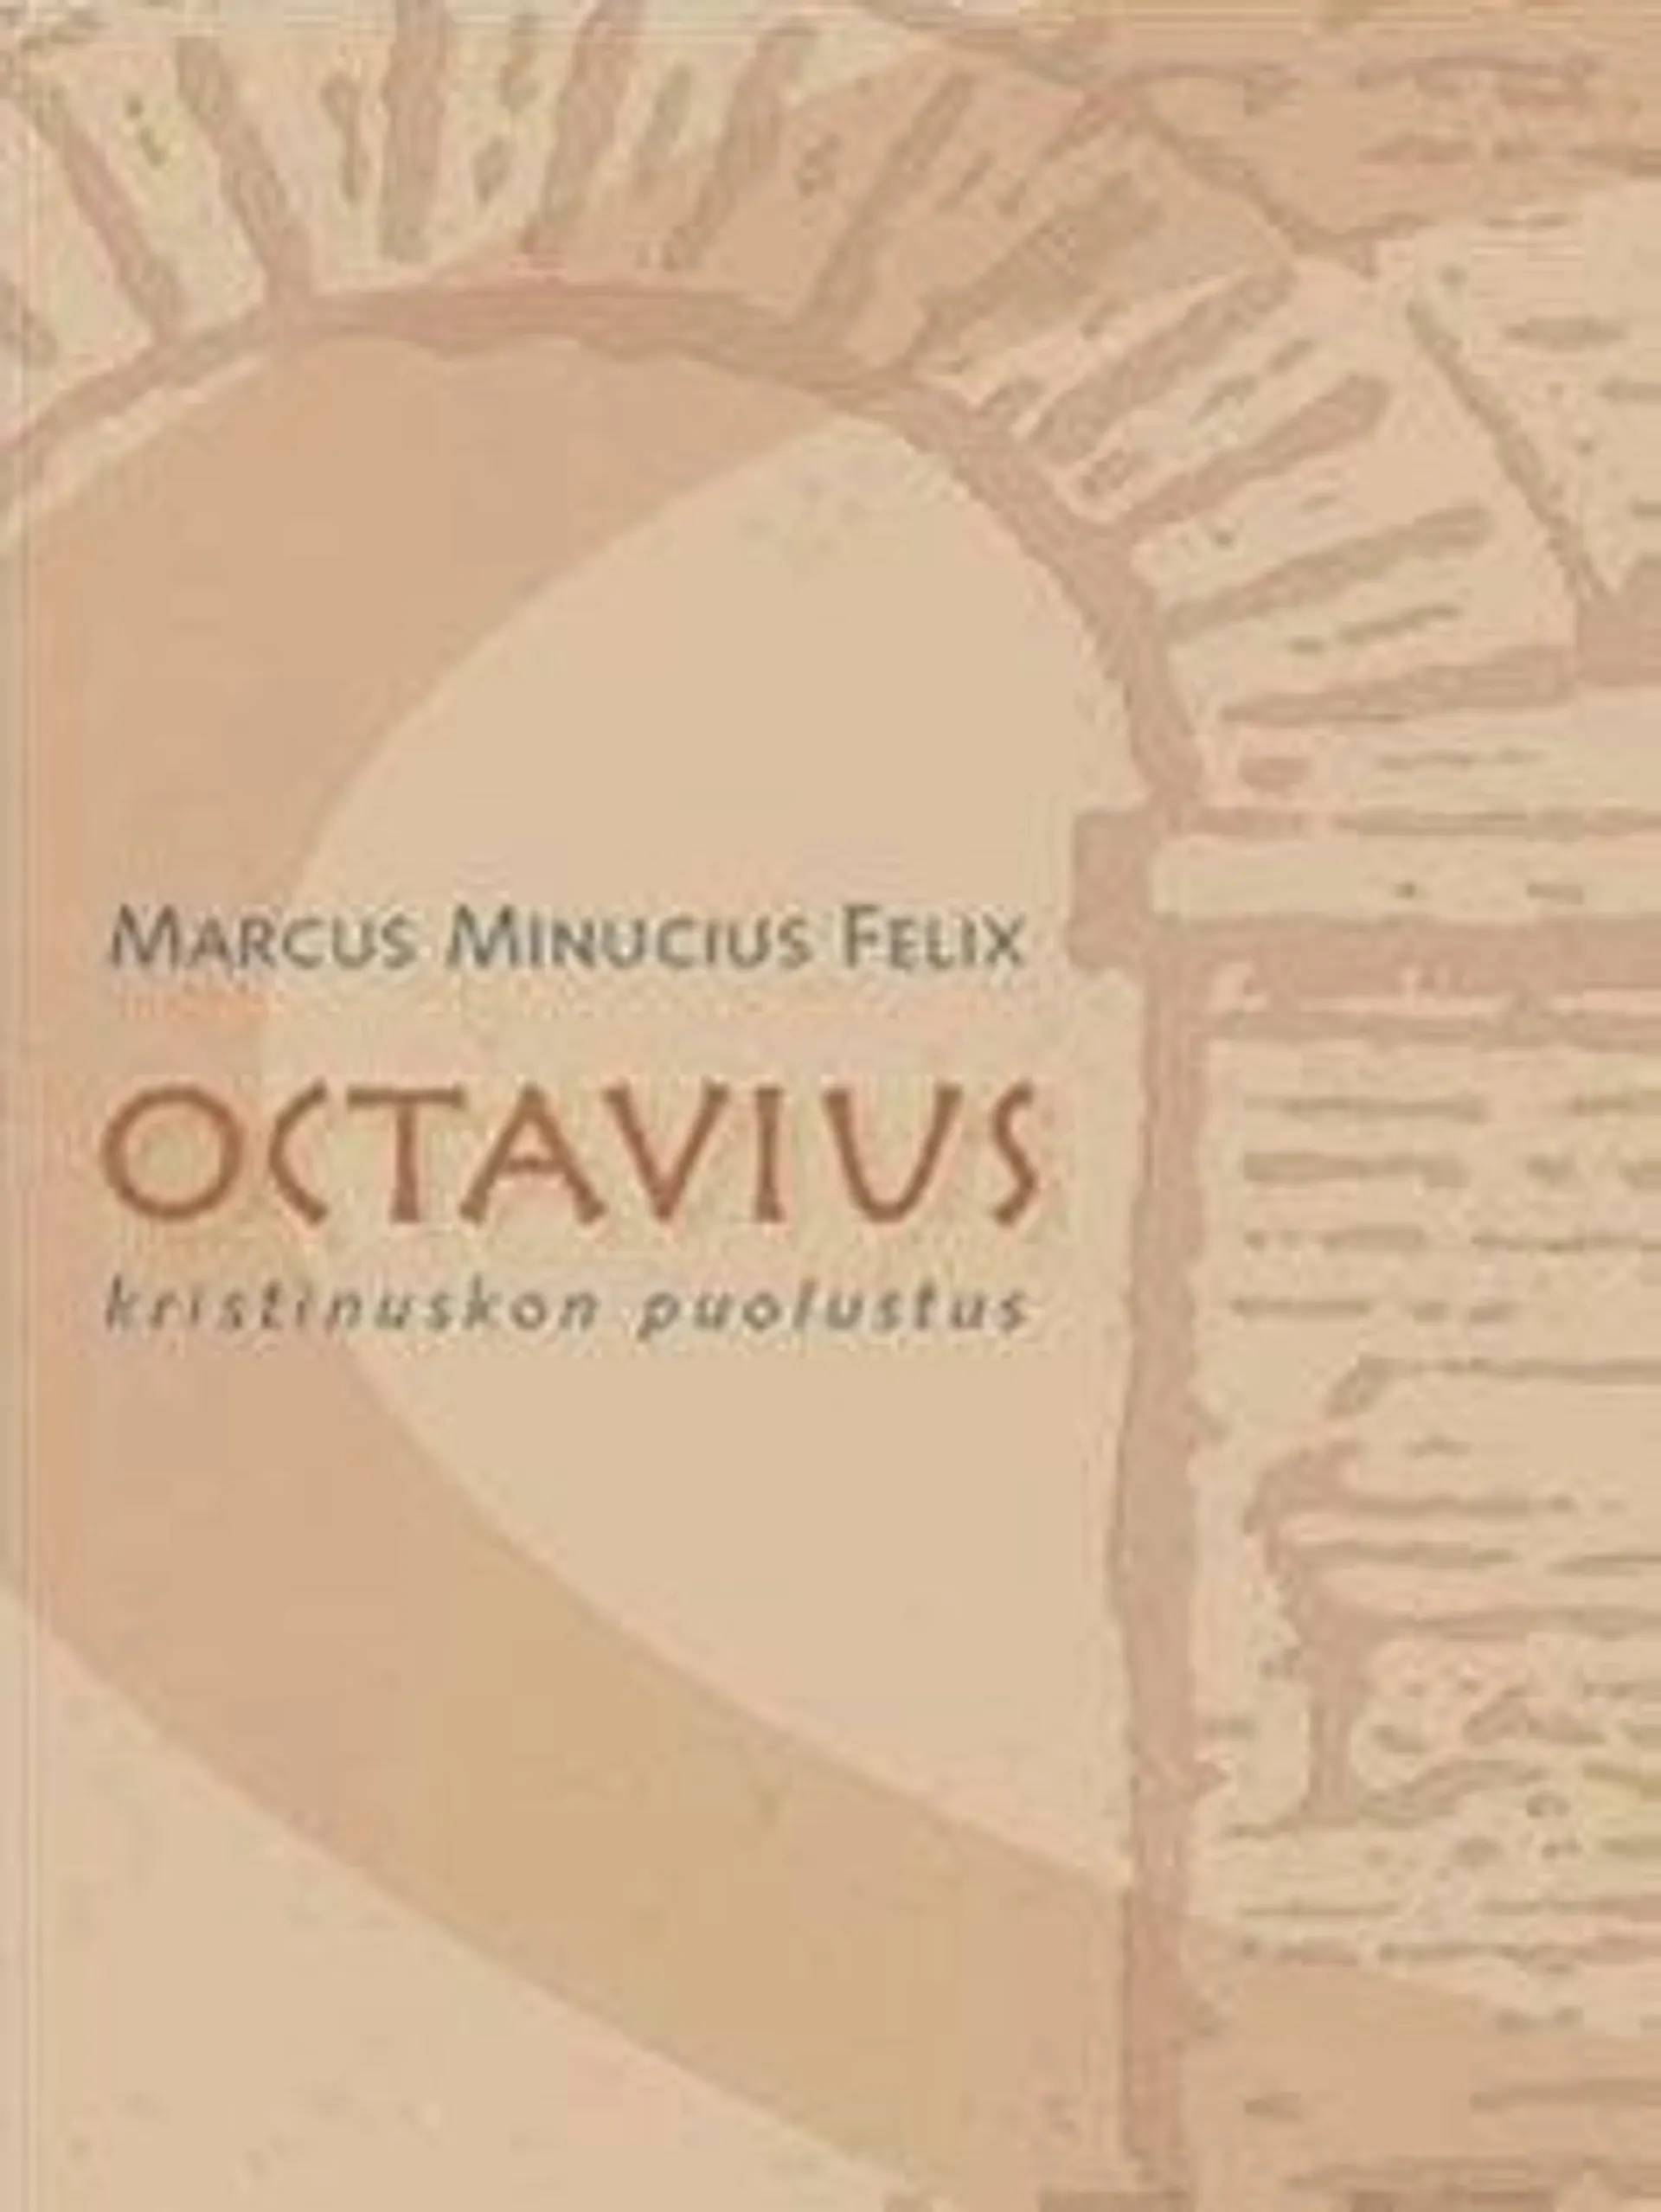 Felix, Octavius